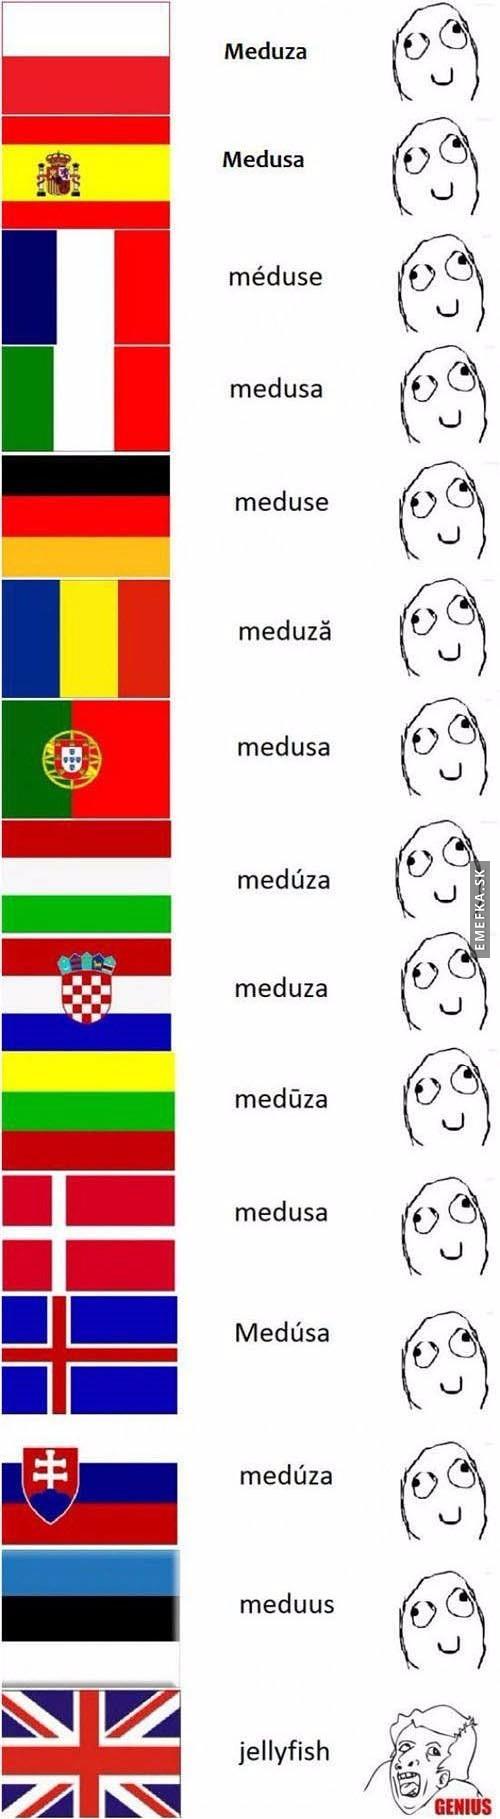  Jazykové rozdíly 